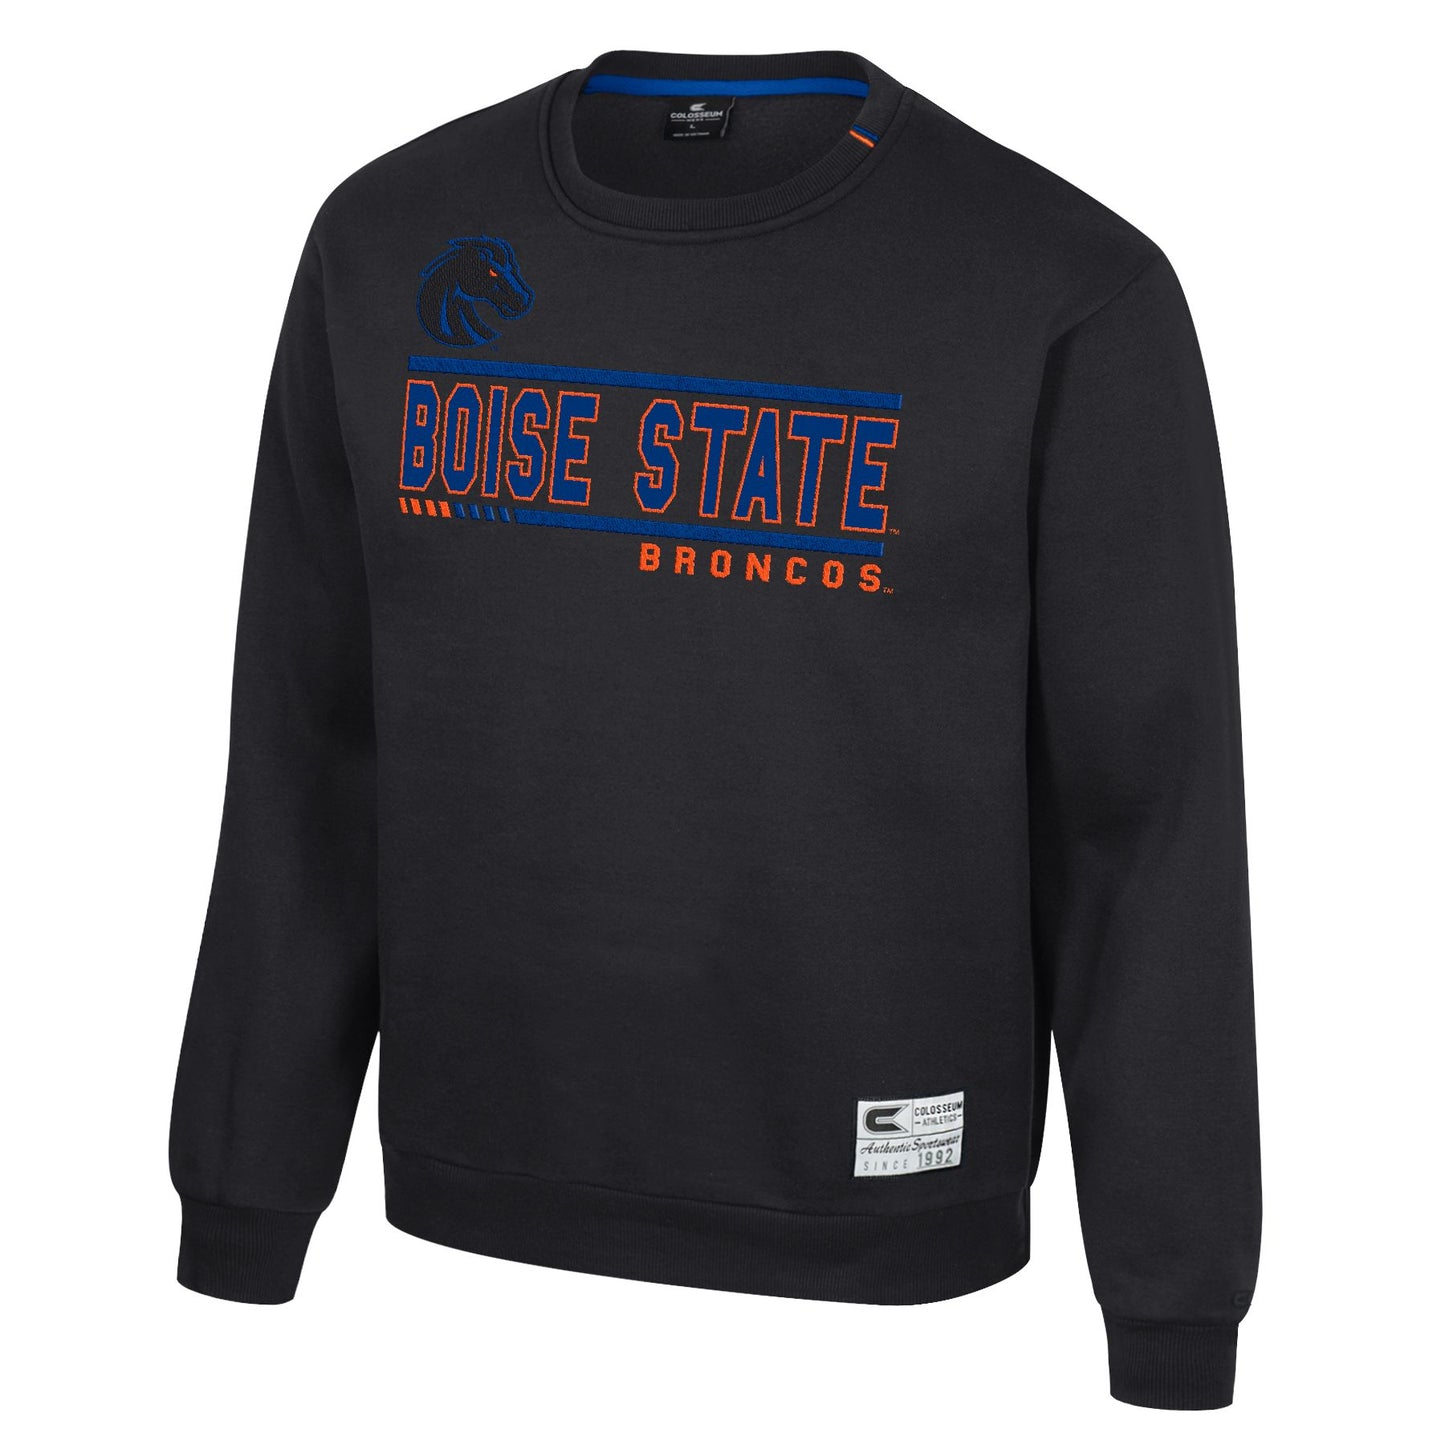 Boise State Broncos Men's Colosseum Crewneck Sweatshirt (Black)